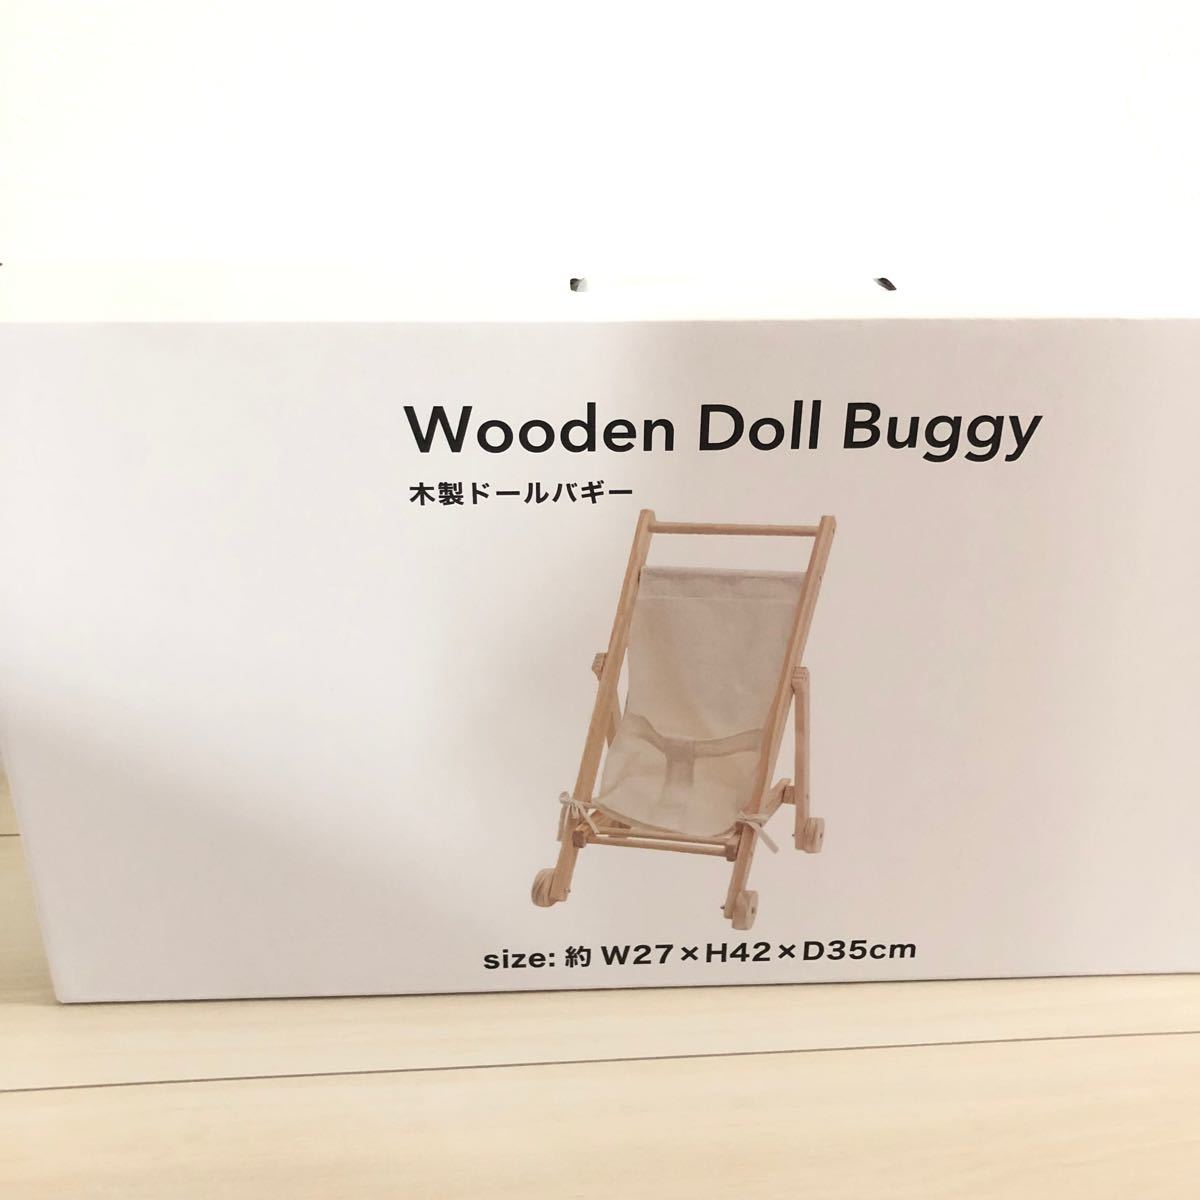 信頼 木製ドールバギー ベビーカー 3COINS スリーコインズ 木製玩具 知育玩具